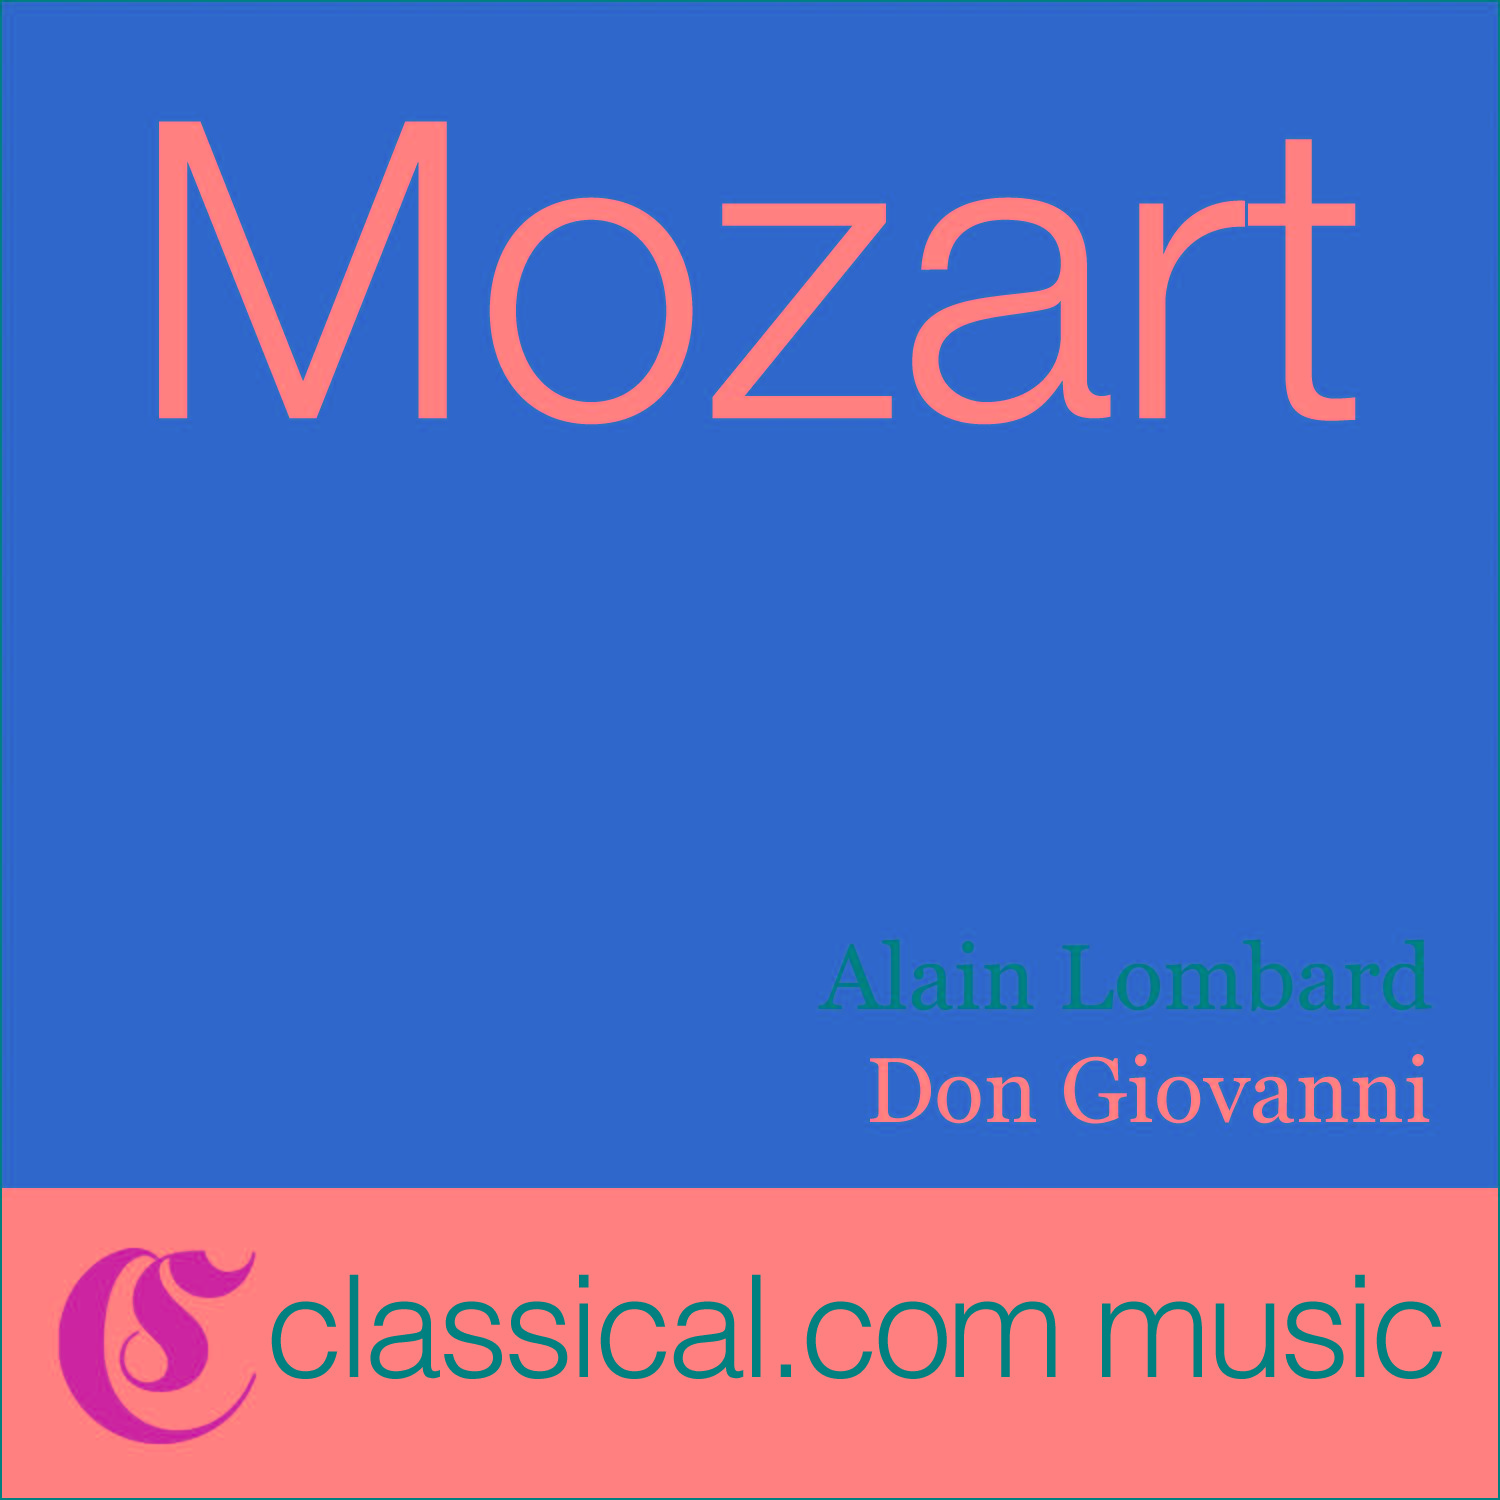 Don Giovanni, K. 527 - Alfin siam liberati